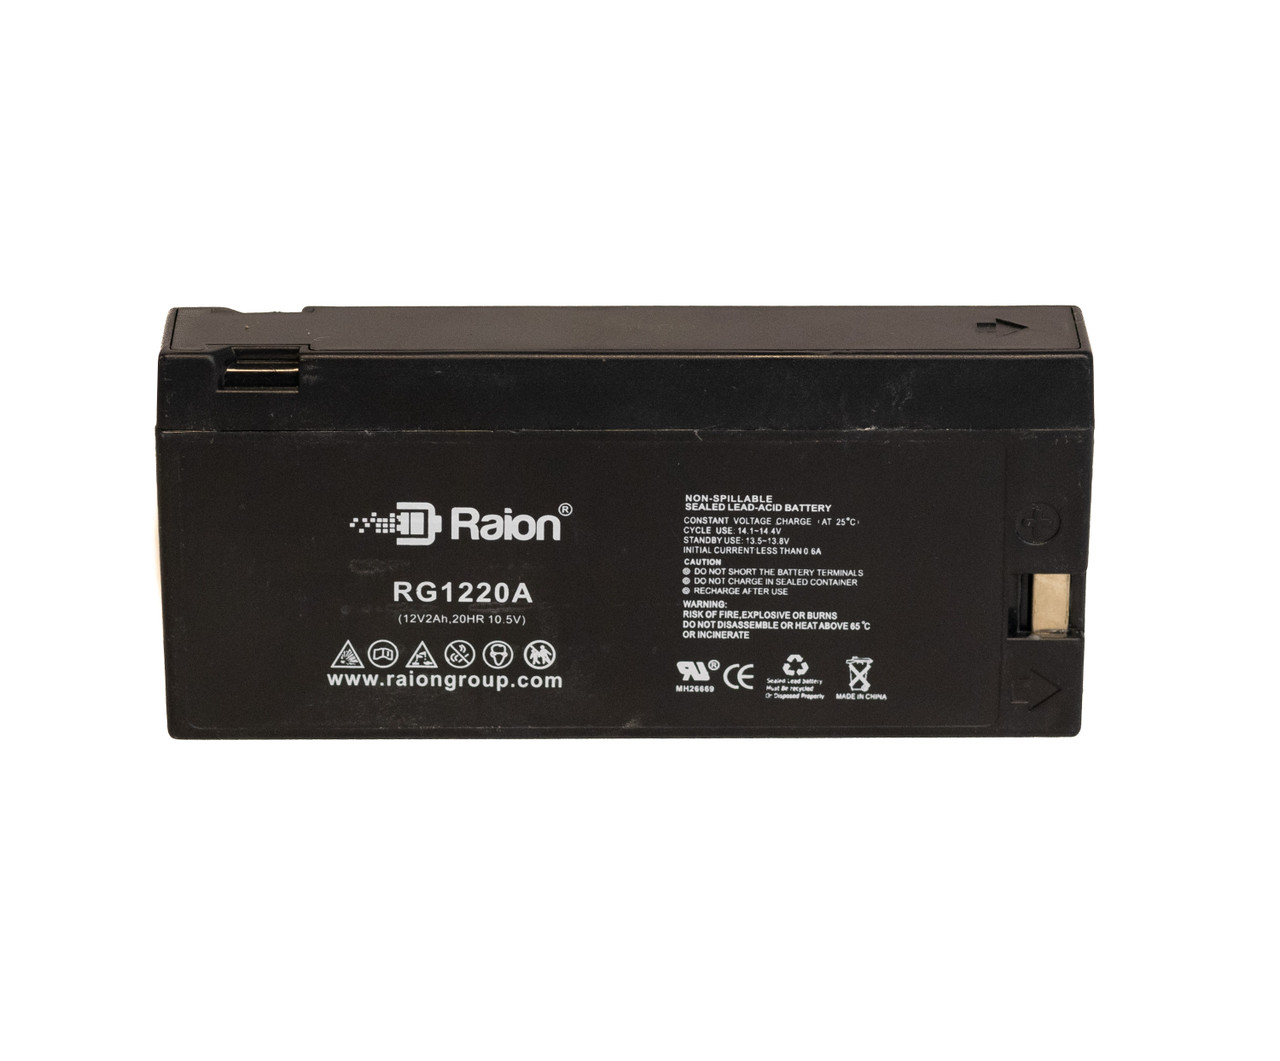 Raion Power RG1220A SLA Battery for Quasar VM-706